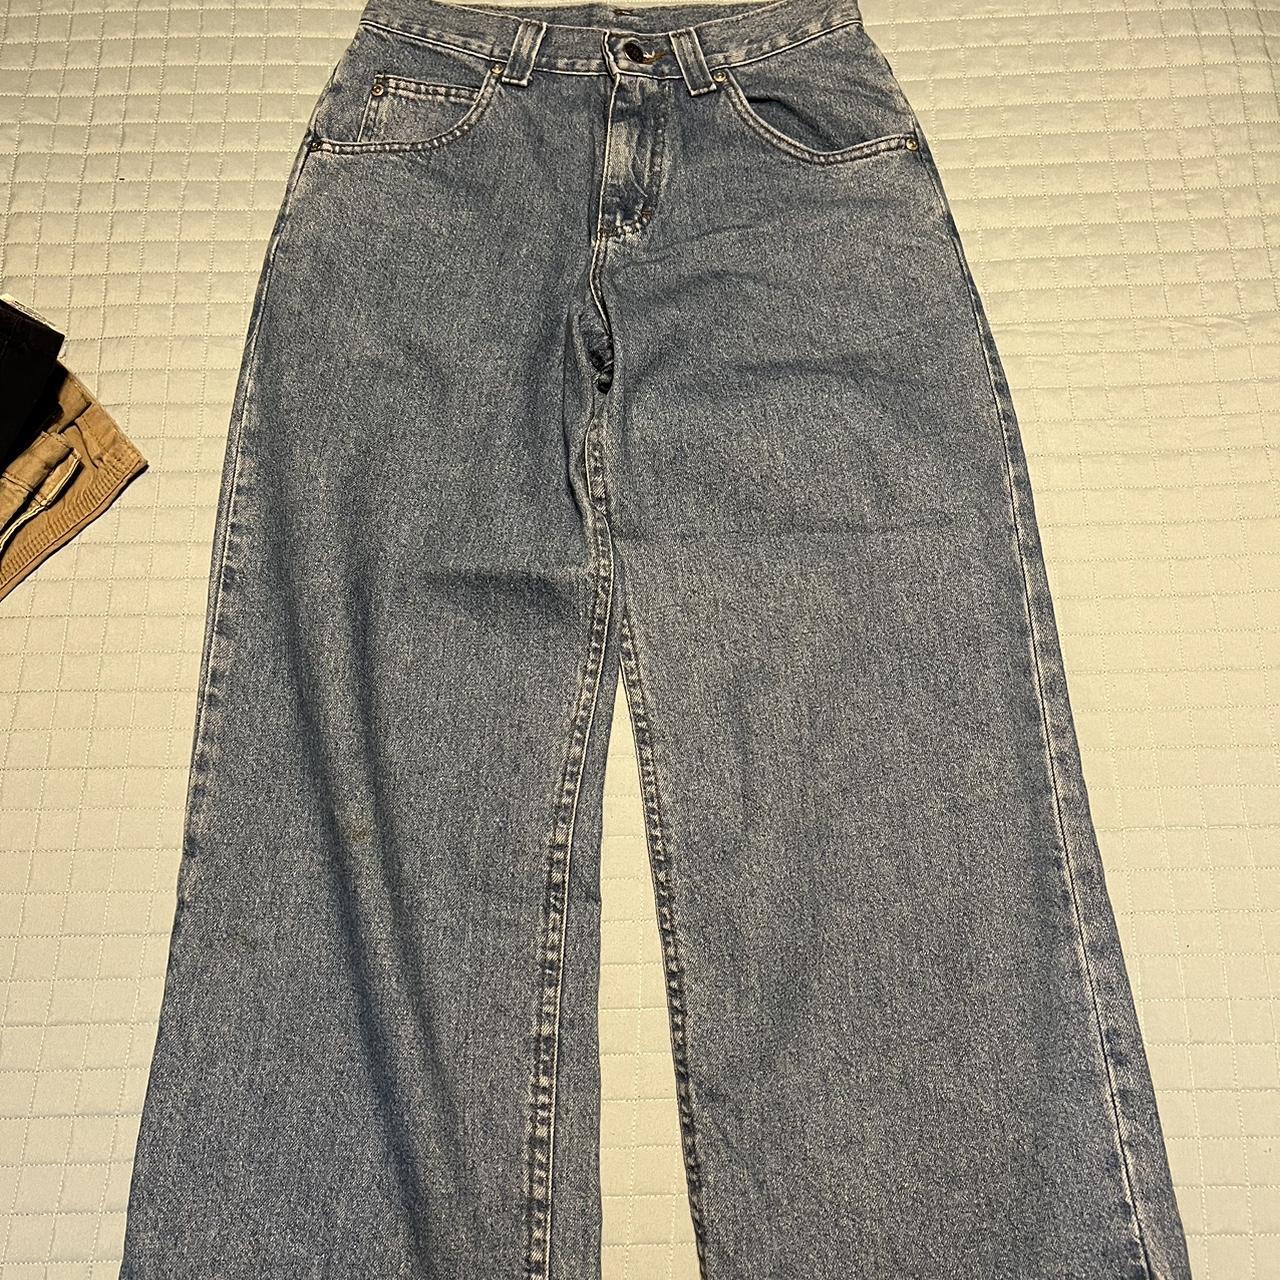 vintage skating lee pipes jeans size 29 baggy fit - Depop